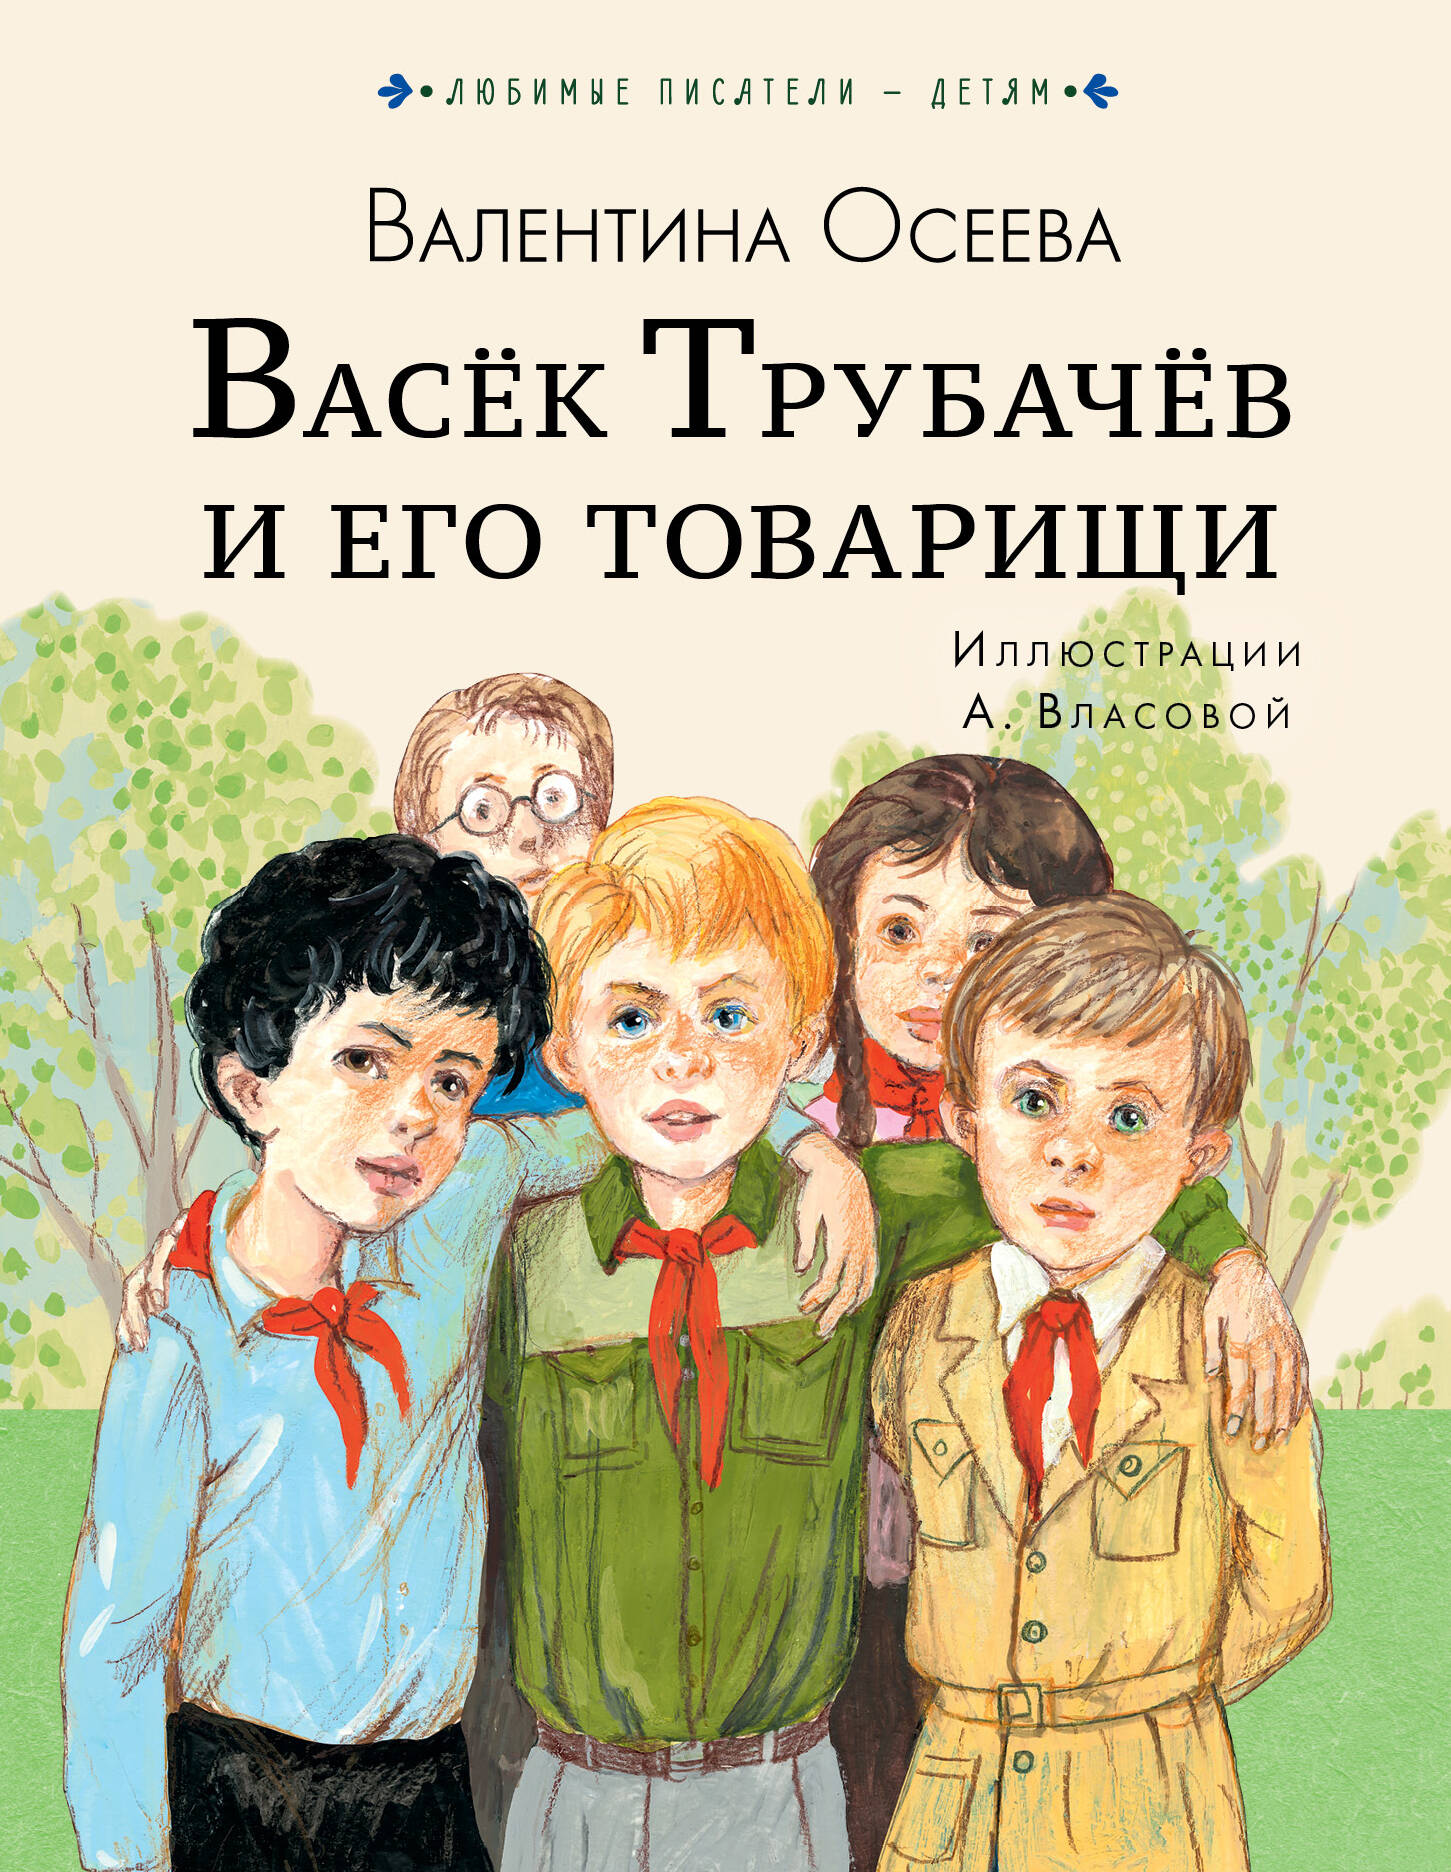 Трубачев и его товарищи читательский дневник